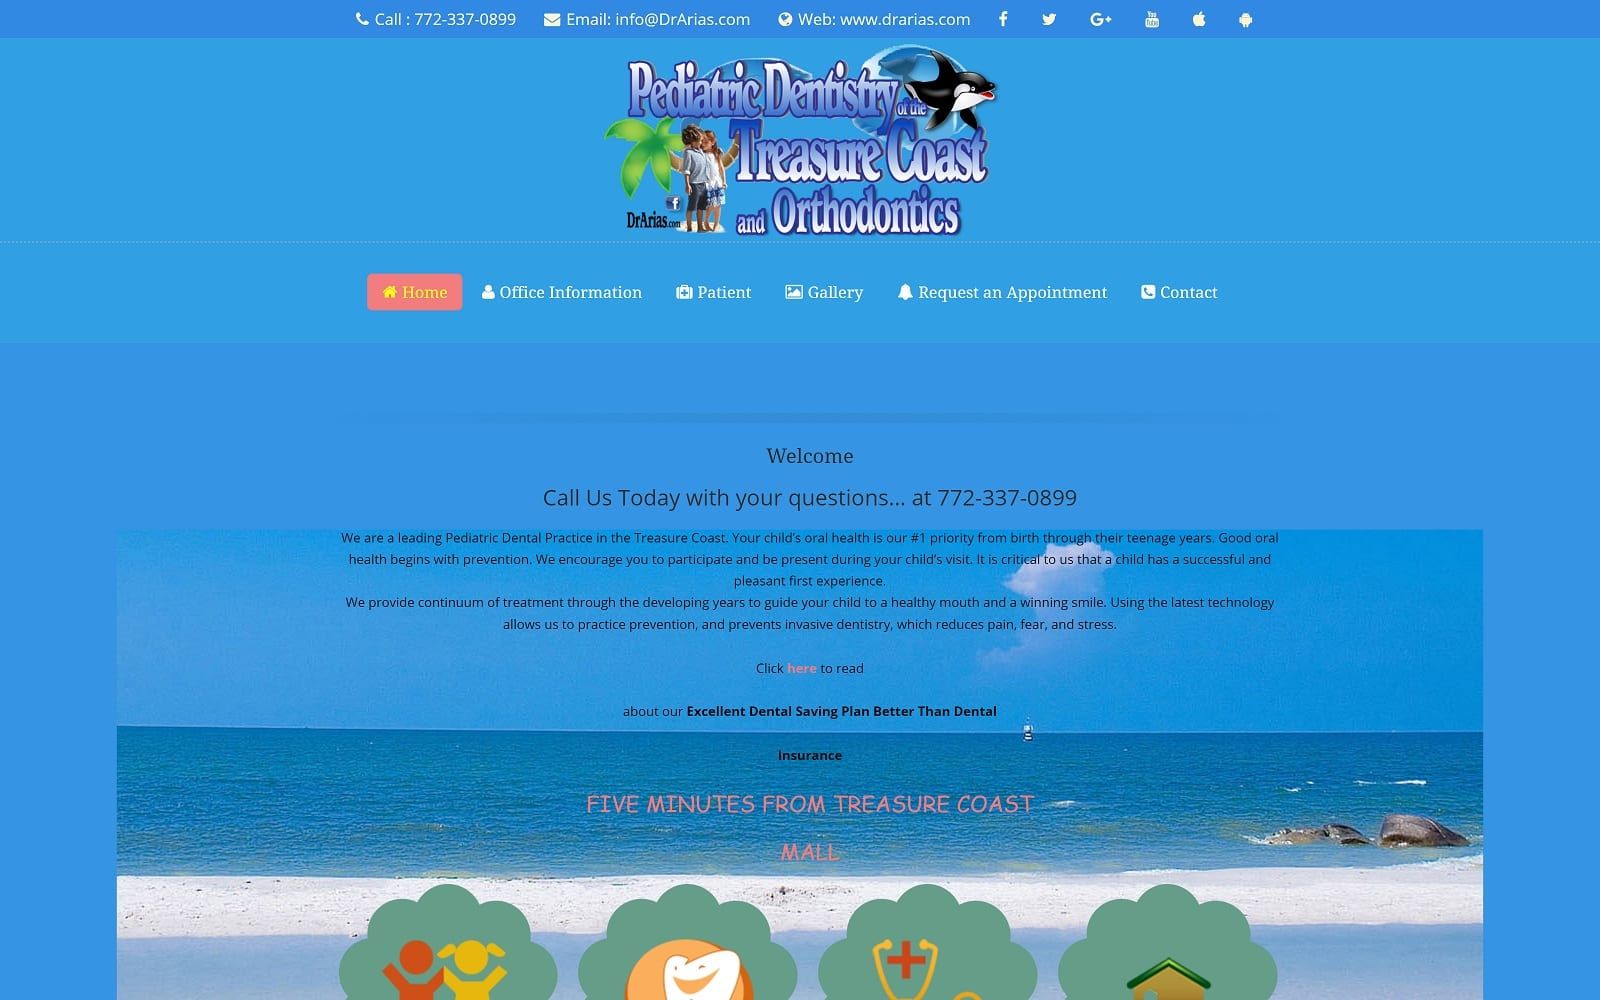 The screenshot of pediatric dentistry of the treasure coast dr. Arias drarias. Com website